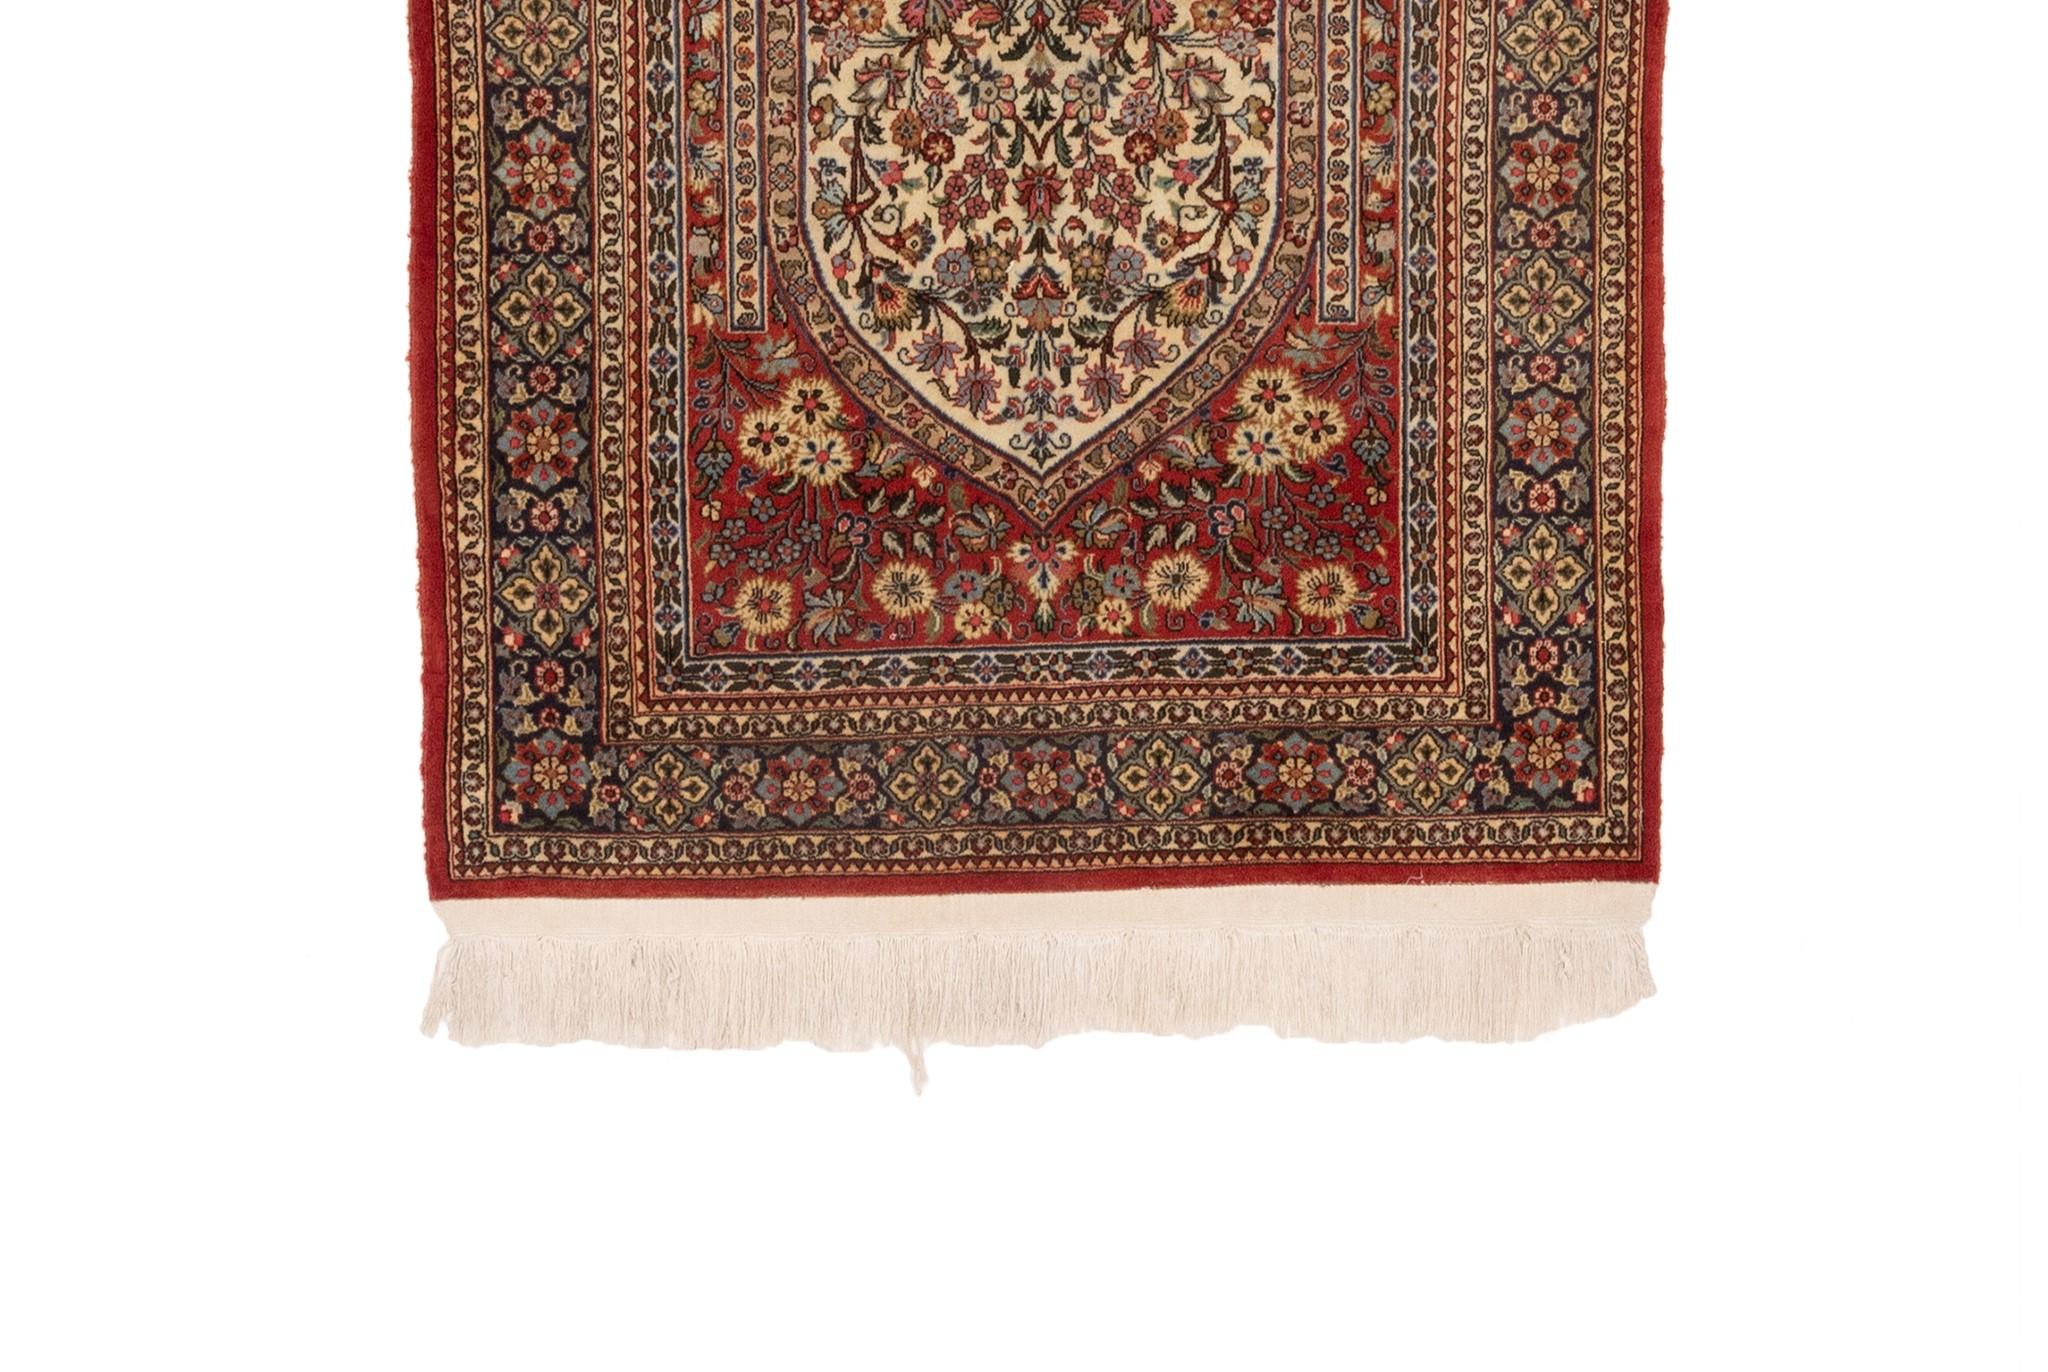 Dieser kleine Teppich, der als 19th Century Red Ivory Blue Floral Kashan bekannt ist, wurde aus hochwertiger Wolle gefertigt. Sein Design ist inspiriert von traditionellen Motiven, die in architektonischen Fliesen zu finden sind, die einst